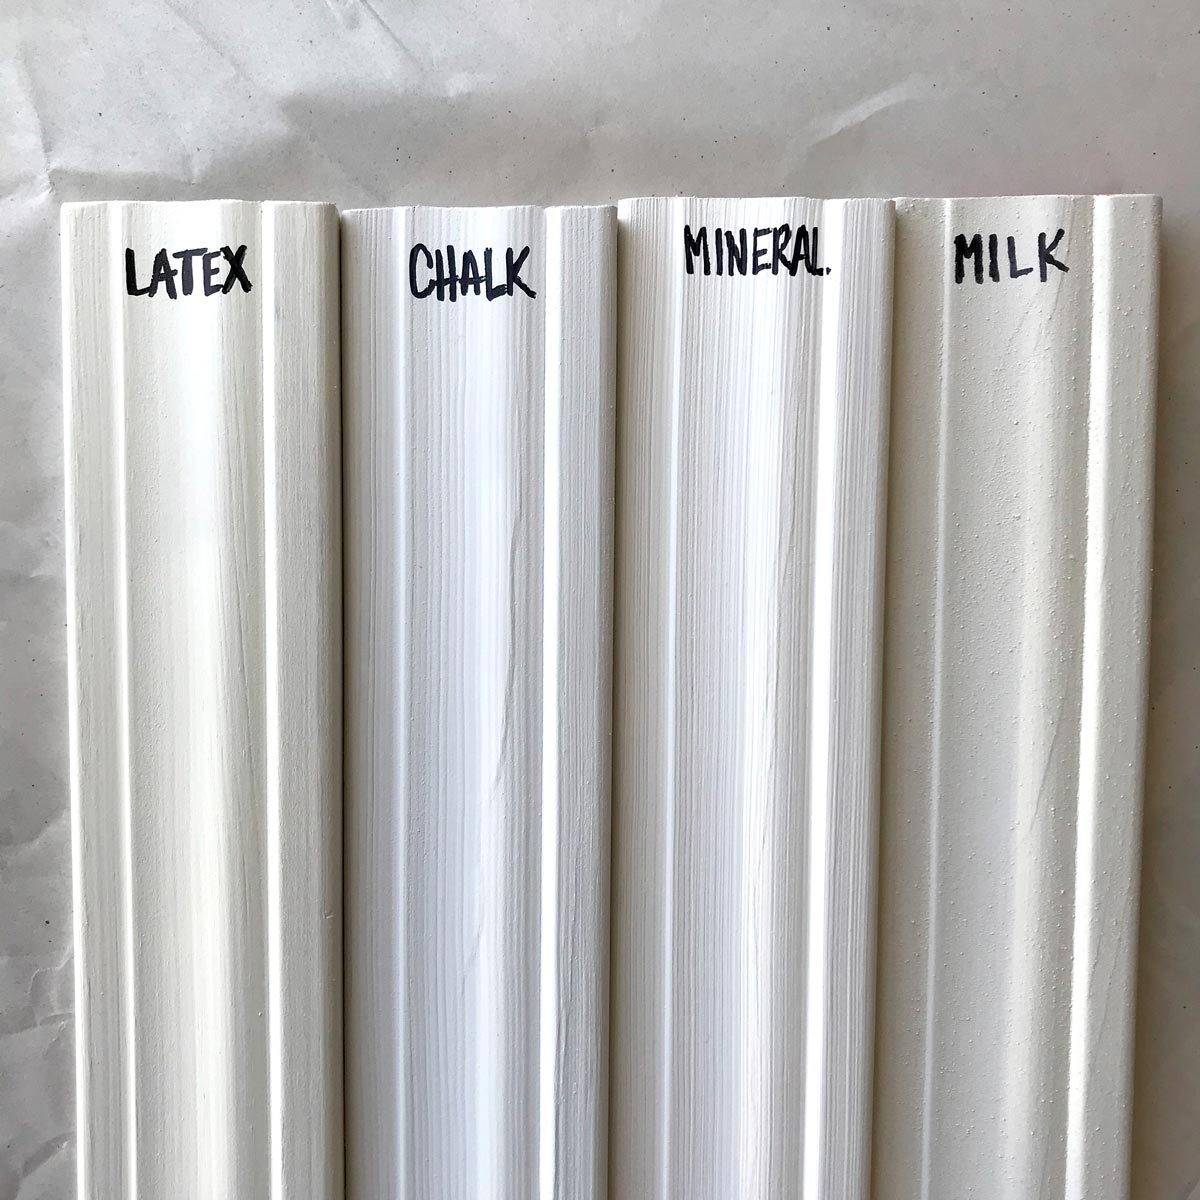 Milk Paint vs. Chalk Paint: Which is Better?